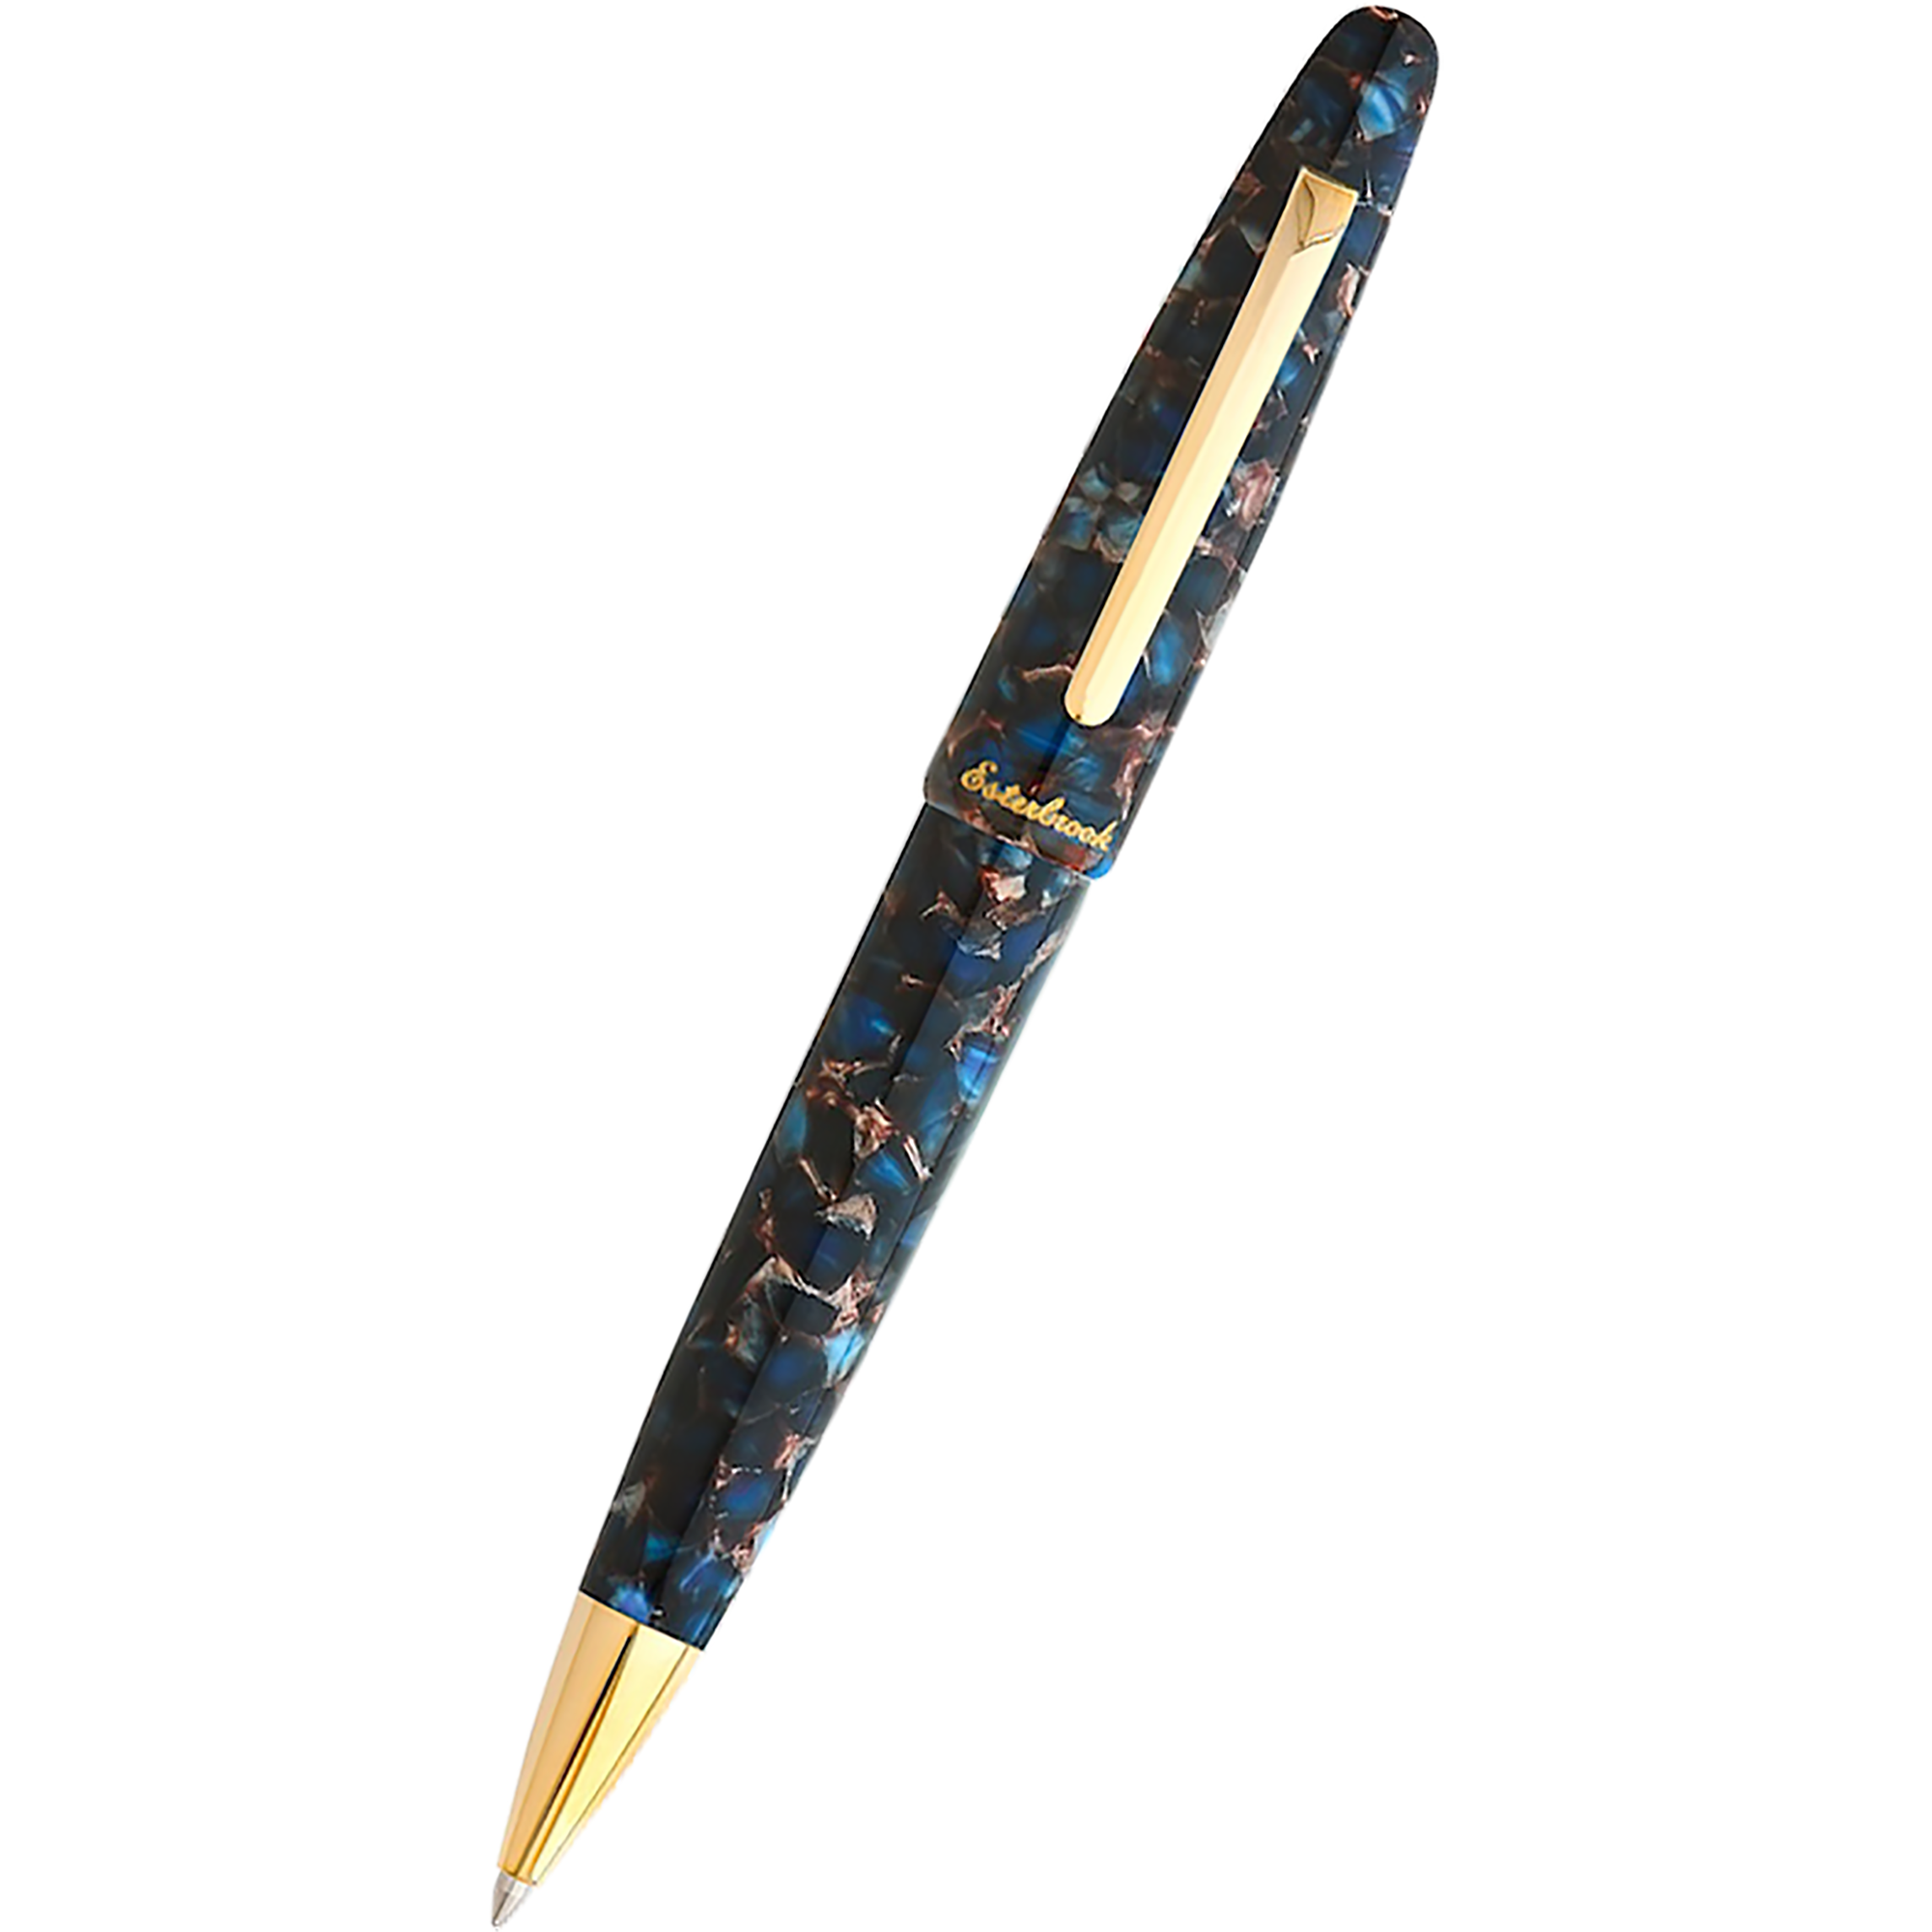 Esterbrook Estie Ballpoint Pen - Nouveau Bleu - Gold Trim-Pen Boutique Ltd